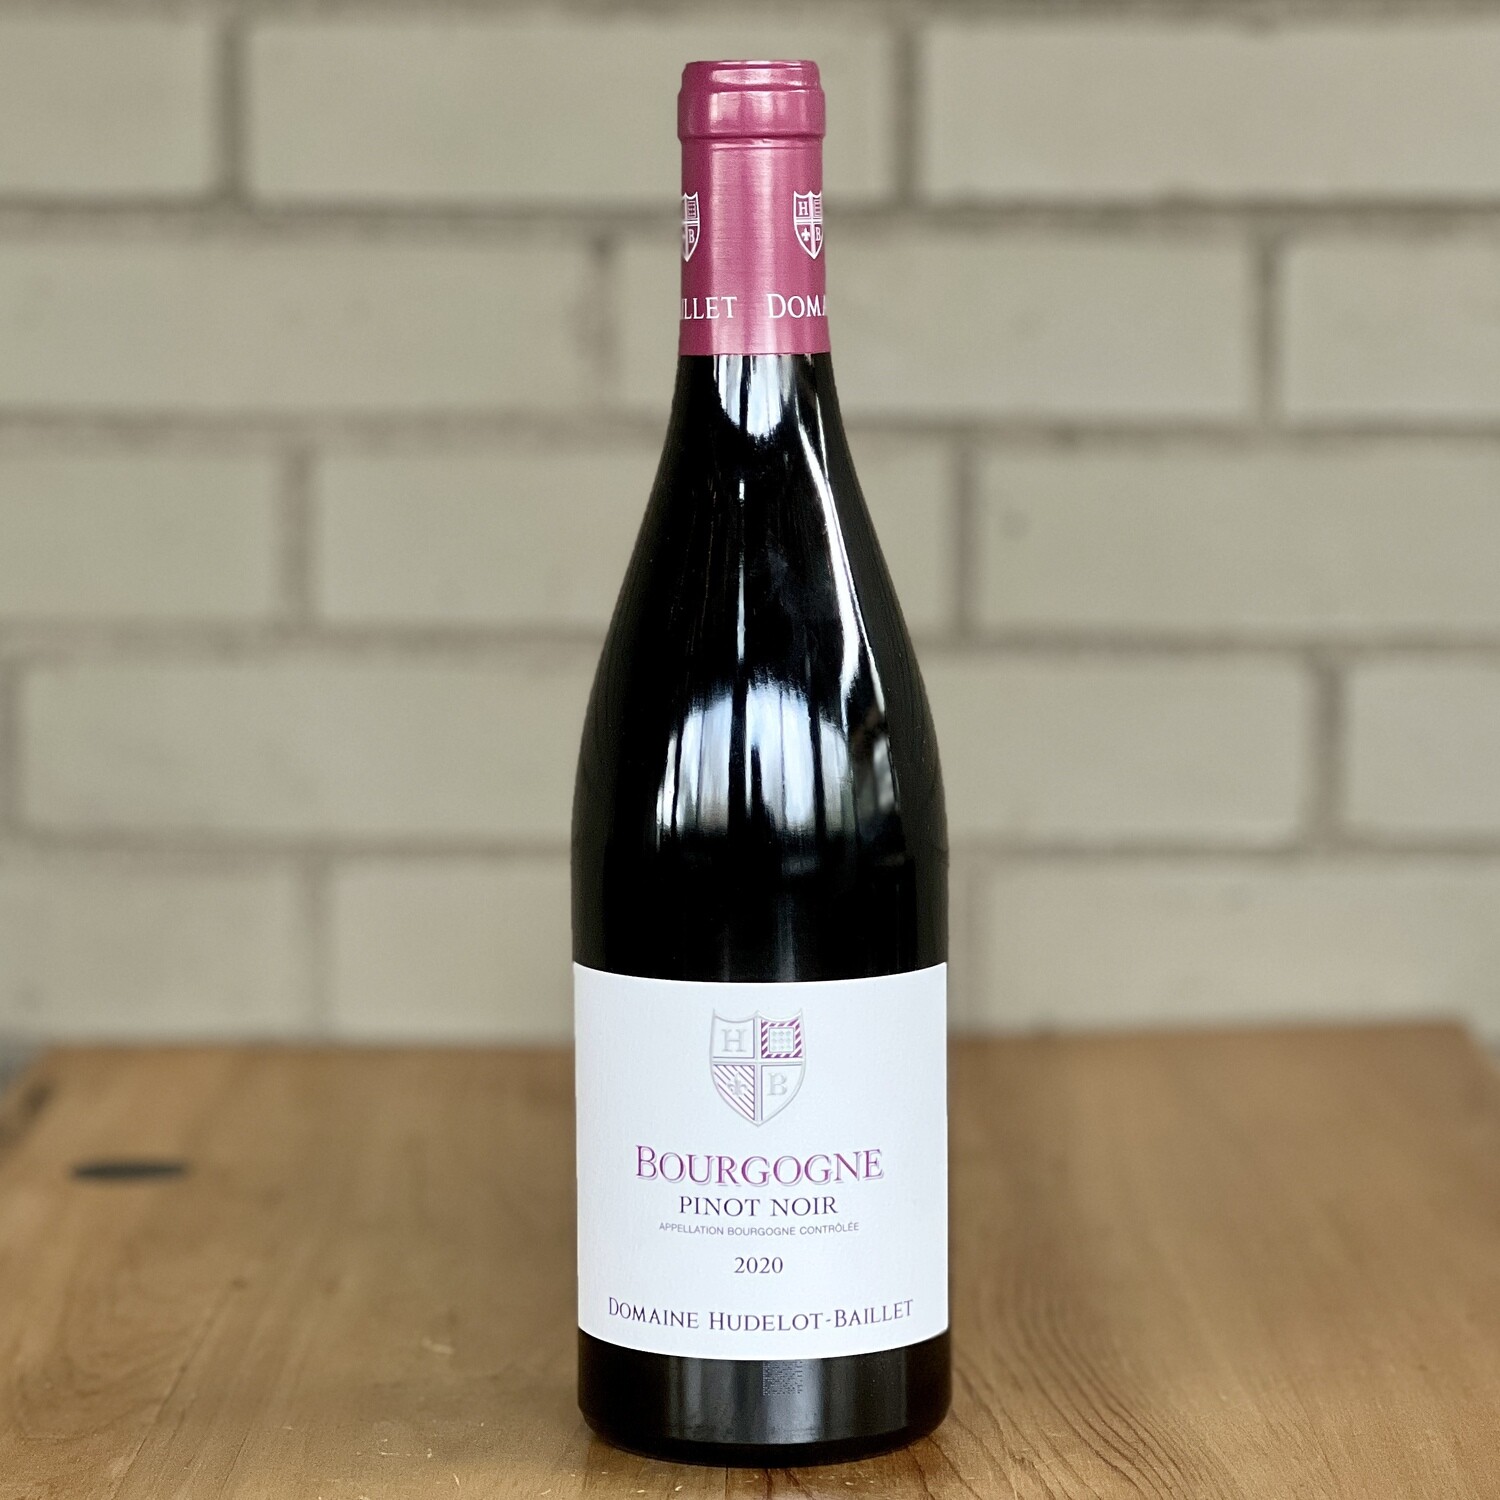 Domaine Hudelot Baillet Bourgogne Pinot Noir 2020 (750ml)